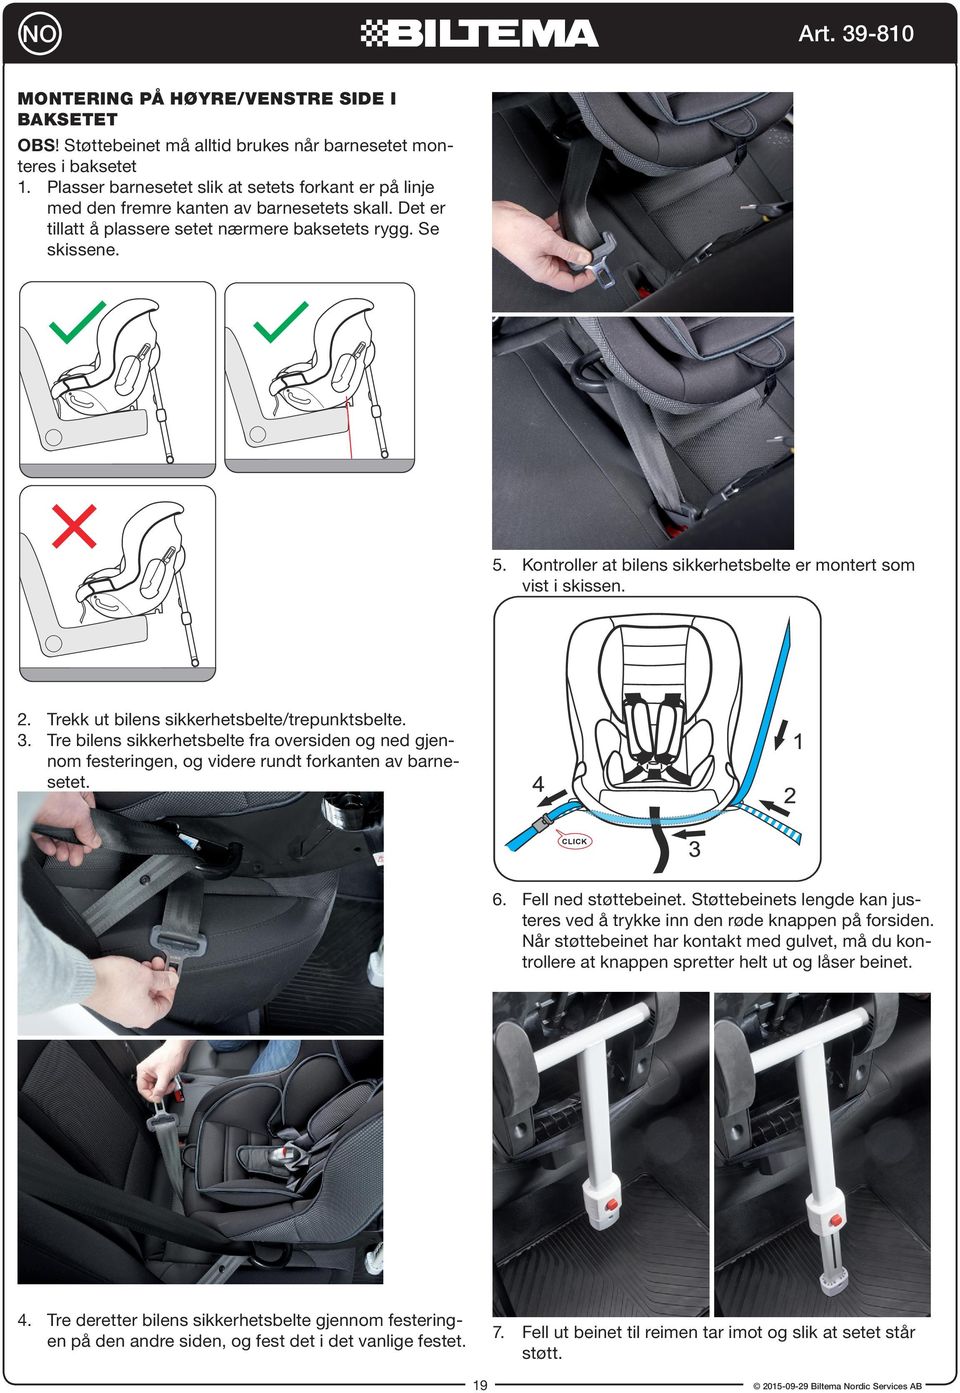 Kontroller at bilens sikkerhetsbelte er montert som vist i skissen. 2. Trekk ut bilens sikkerhetsbelte/trepunktsbelte. 3.